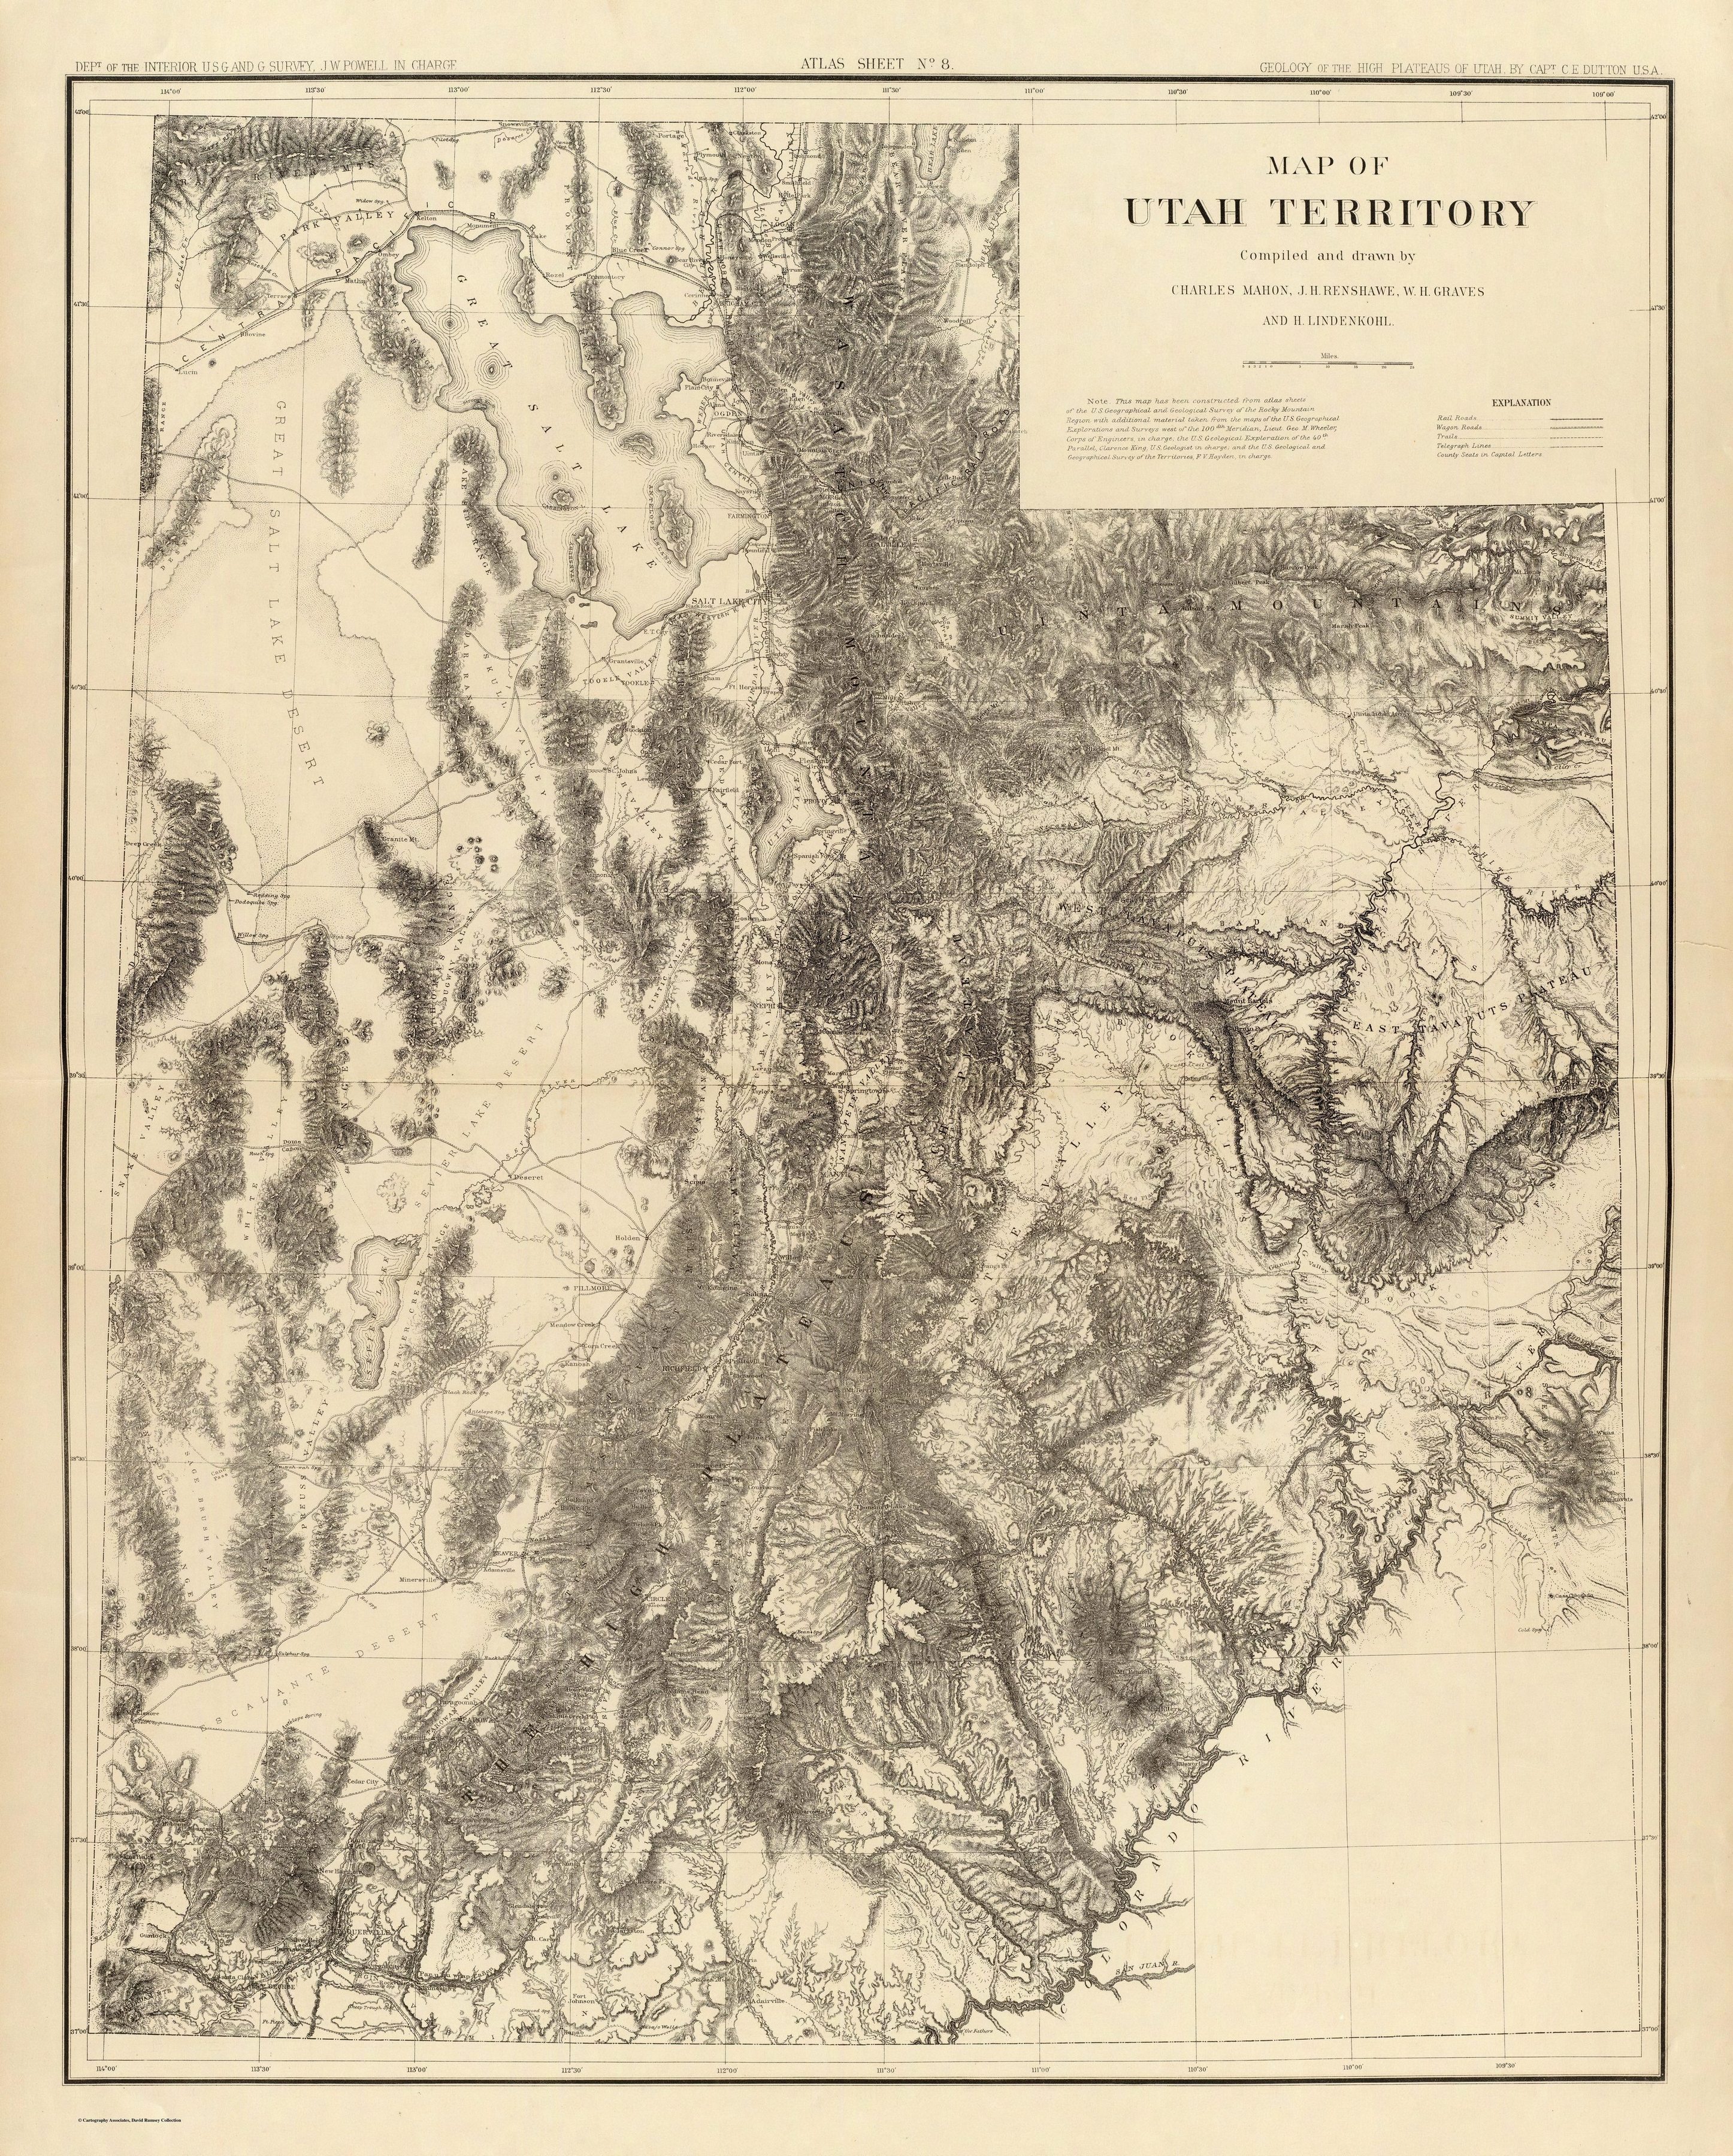 Une carte topographique de l’Utah